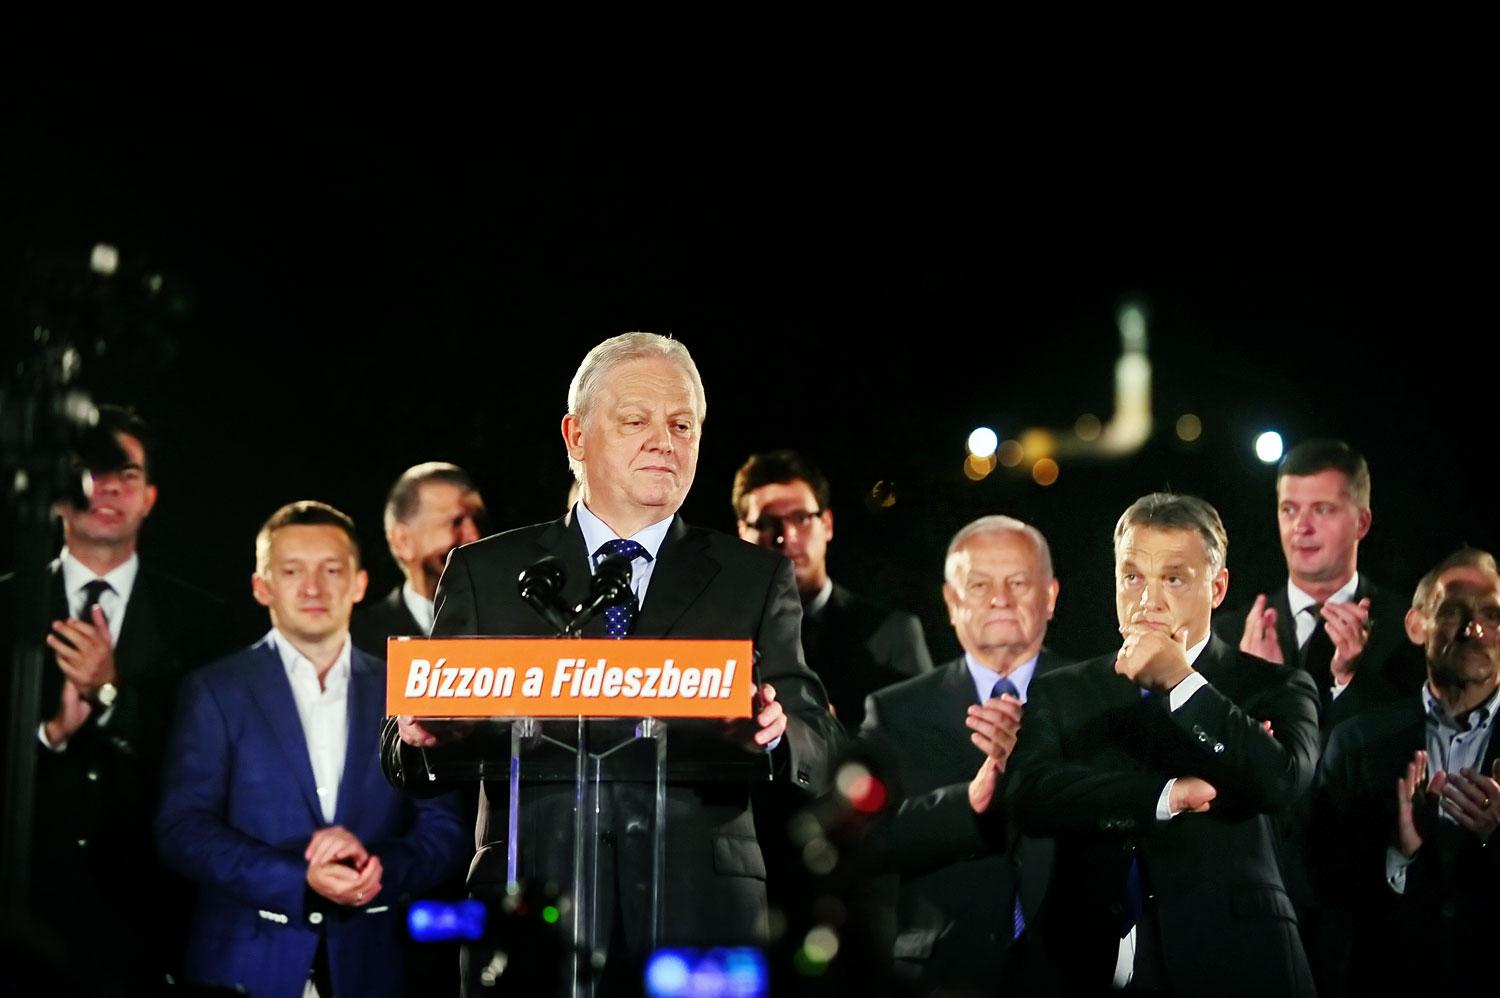 Tarlós beszél, Orbán hallgatja – kép a 2014-es önkormányzati választásokon aratott győzelem közös ünnepléséről